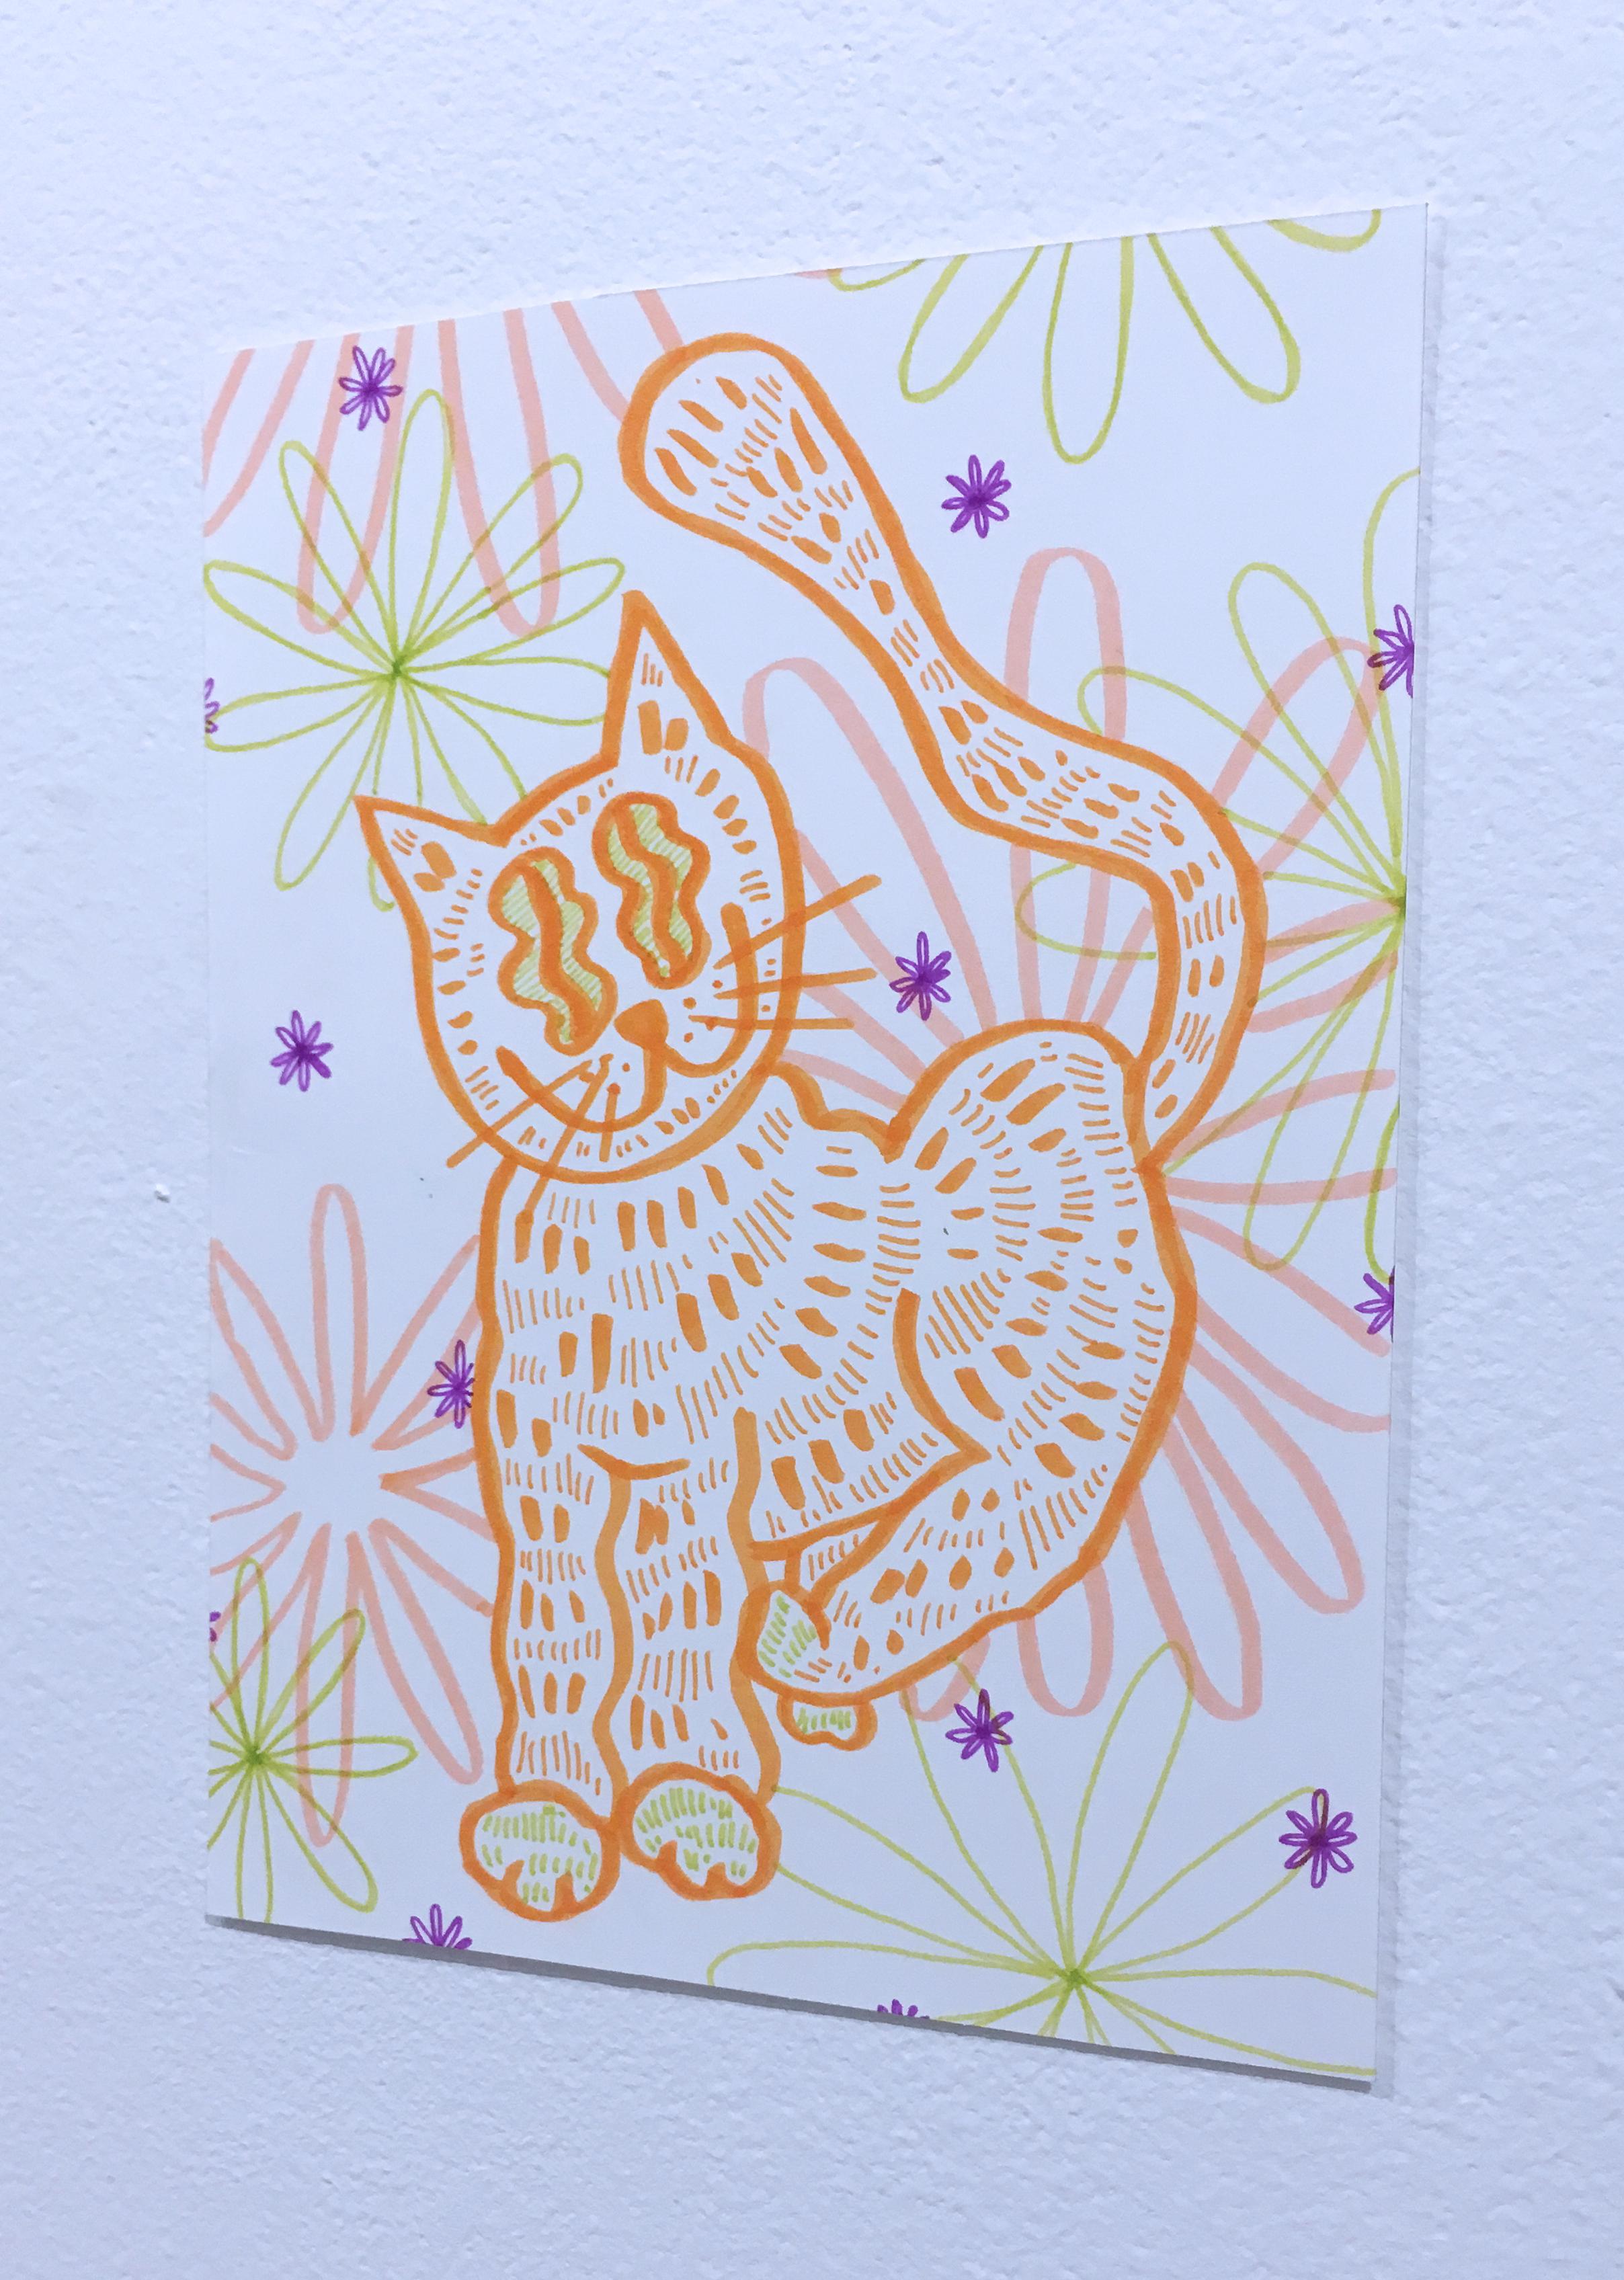 Soft and Fuzzy, dessin sur papier à l'aquarelle, chat avec fleurs, motif graphique ondulé - Gris Figurative Art par SarahGrace